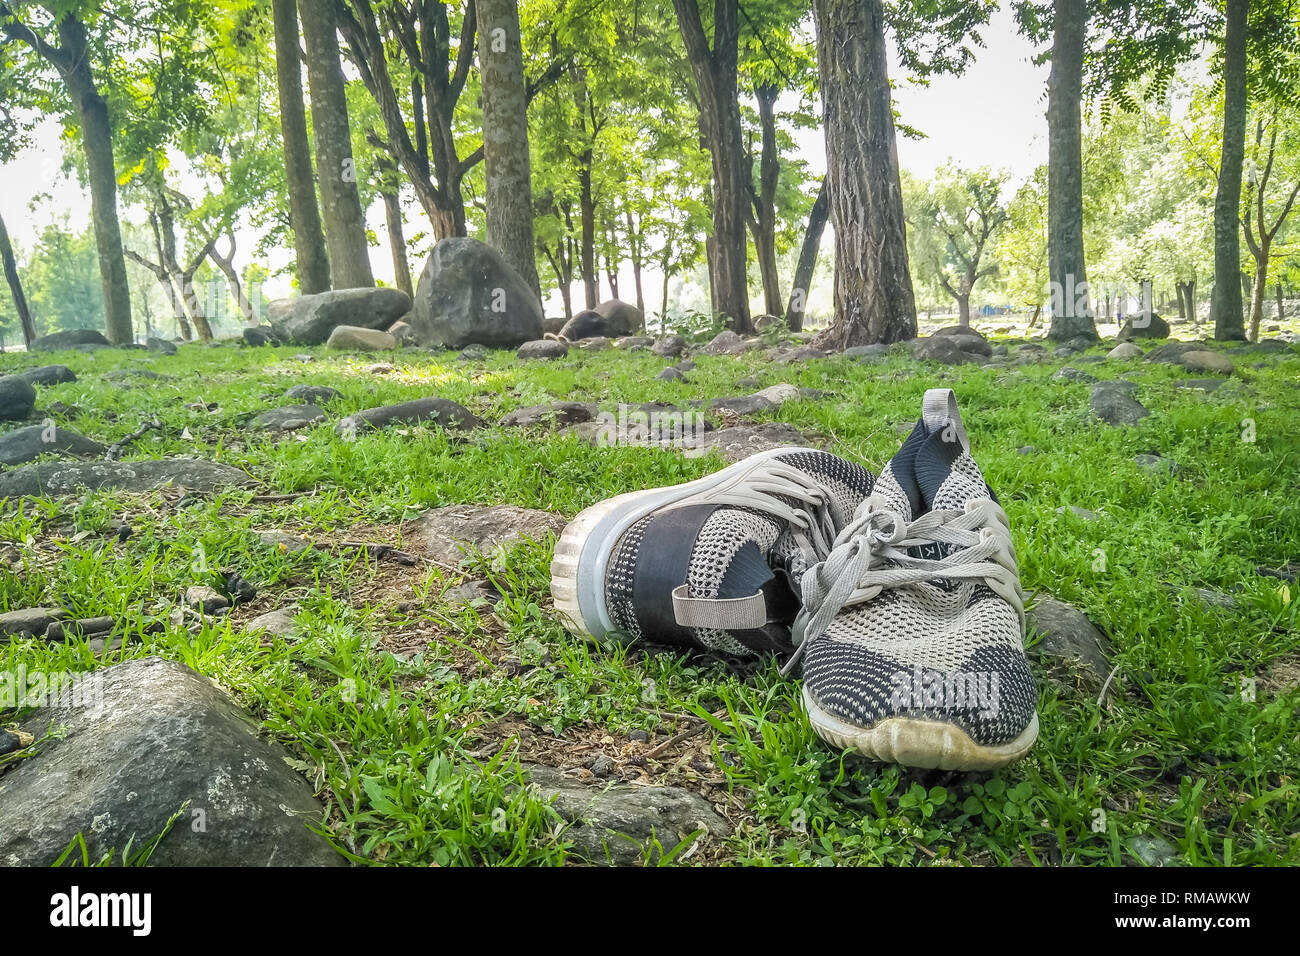 Scarpe mantenuto su erba in una zona forestale Foto Stock